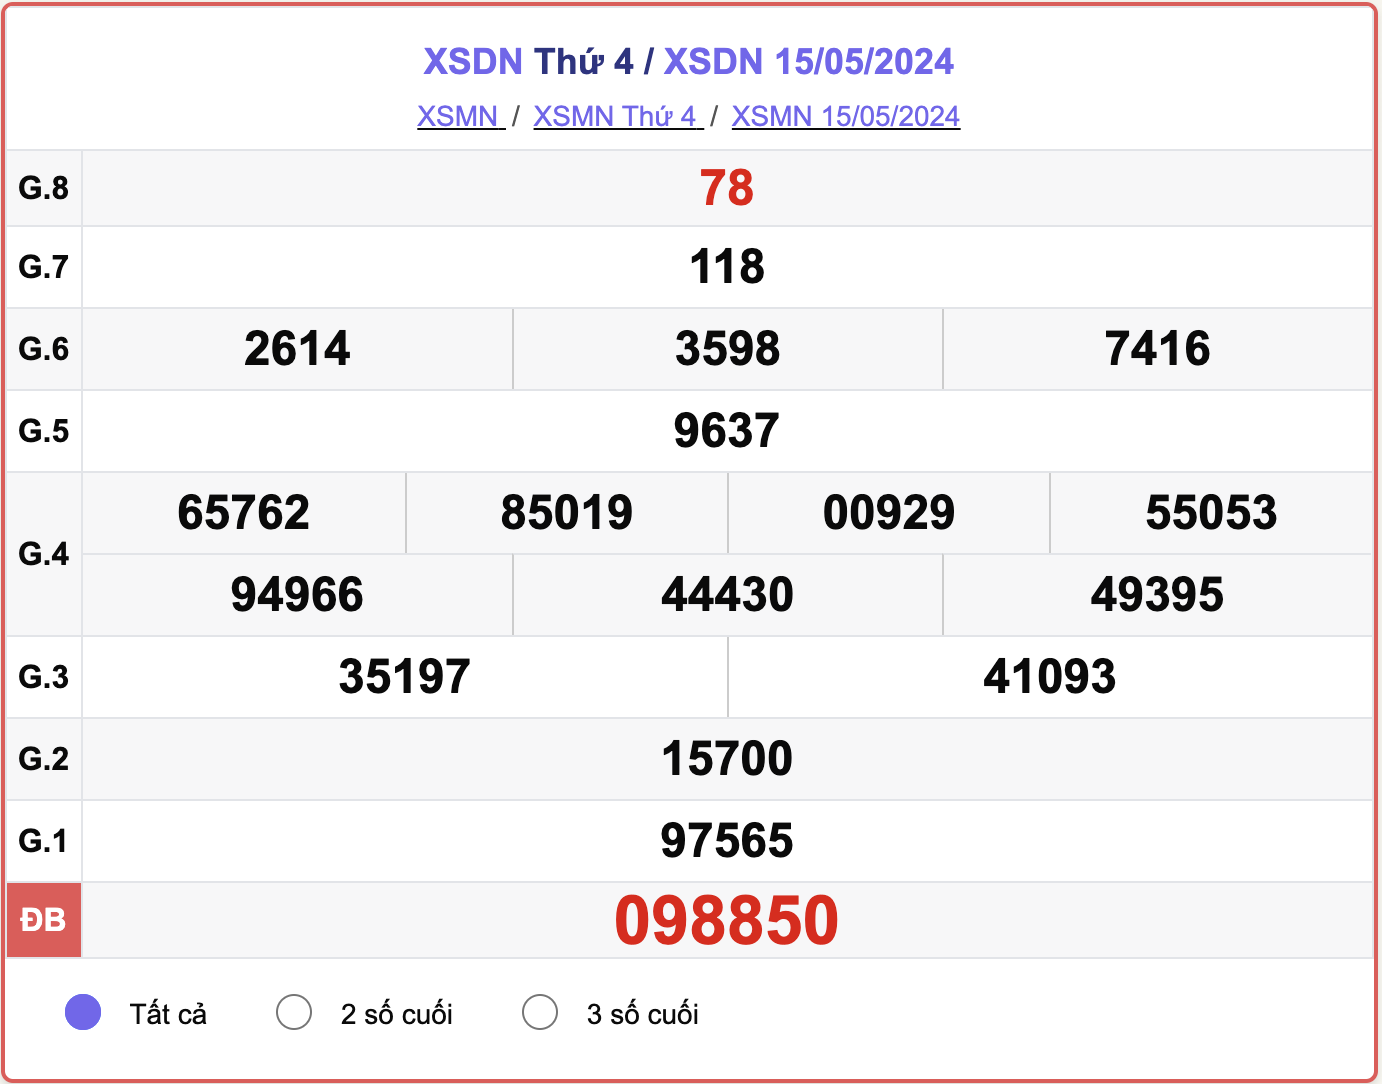 XSDN 15/5, kết quả xổ số Đồng Nai ngày 15/5/2024.